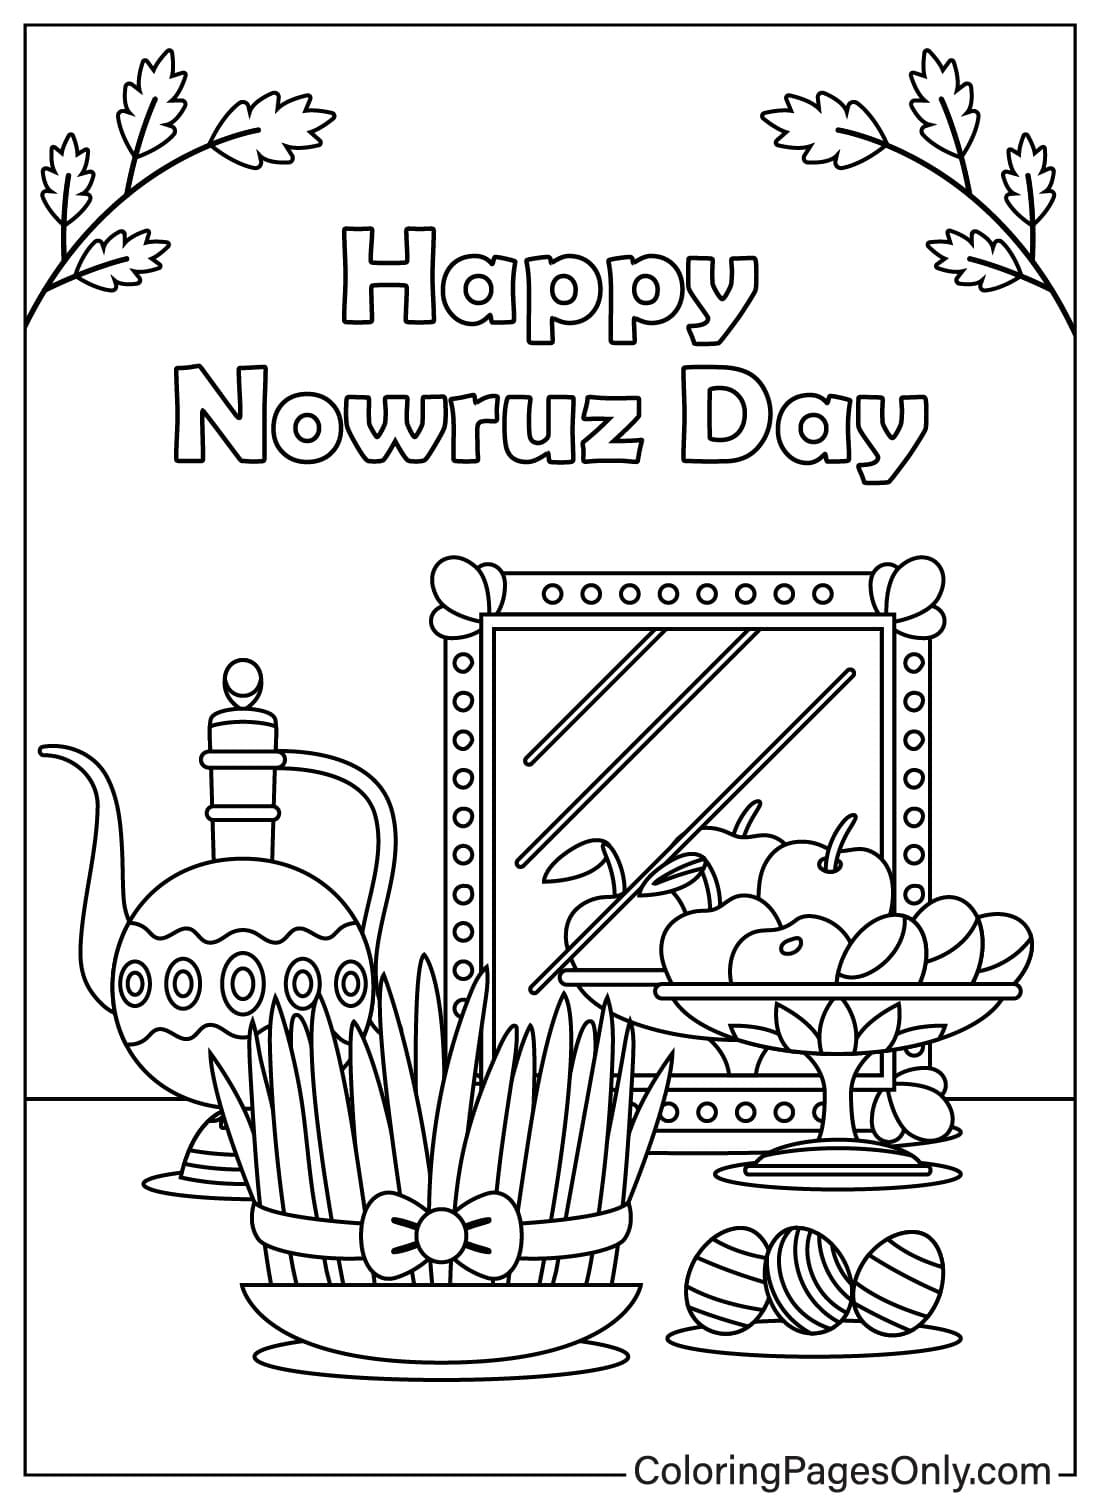 Ausmalbild zum Internationalen Nowruz-Tag vom Internationalen Nowruz-Tag